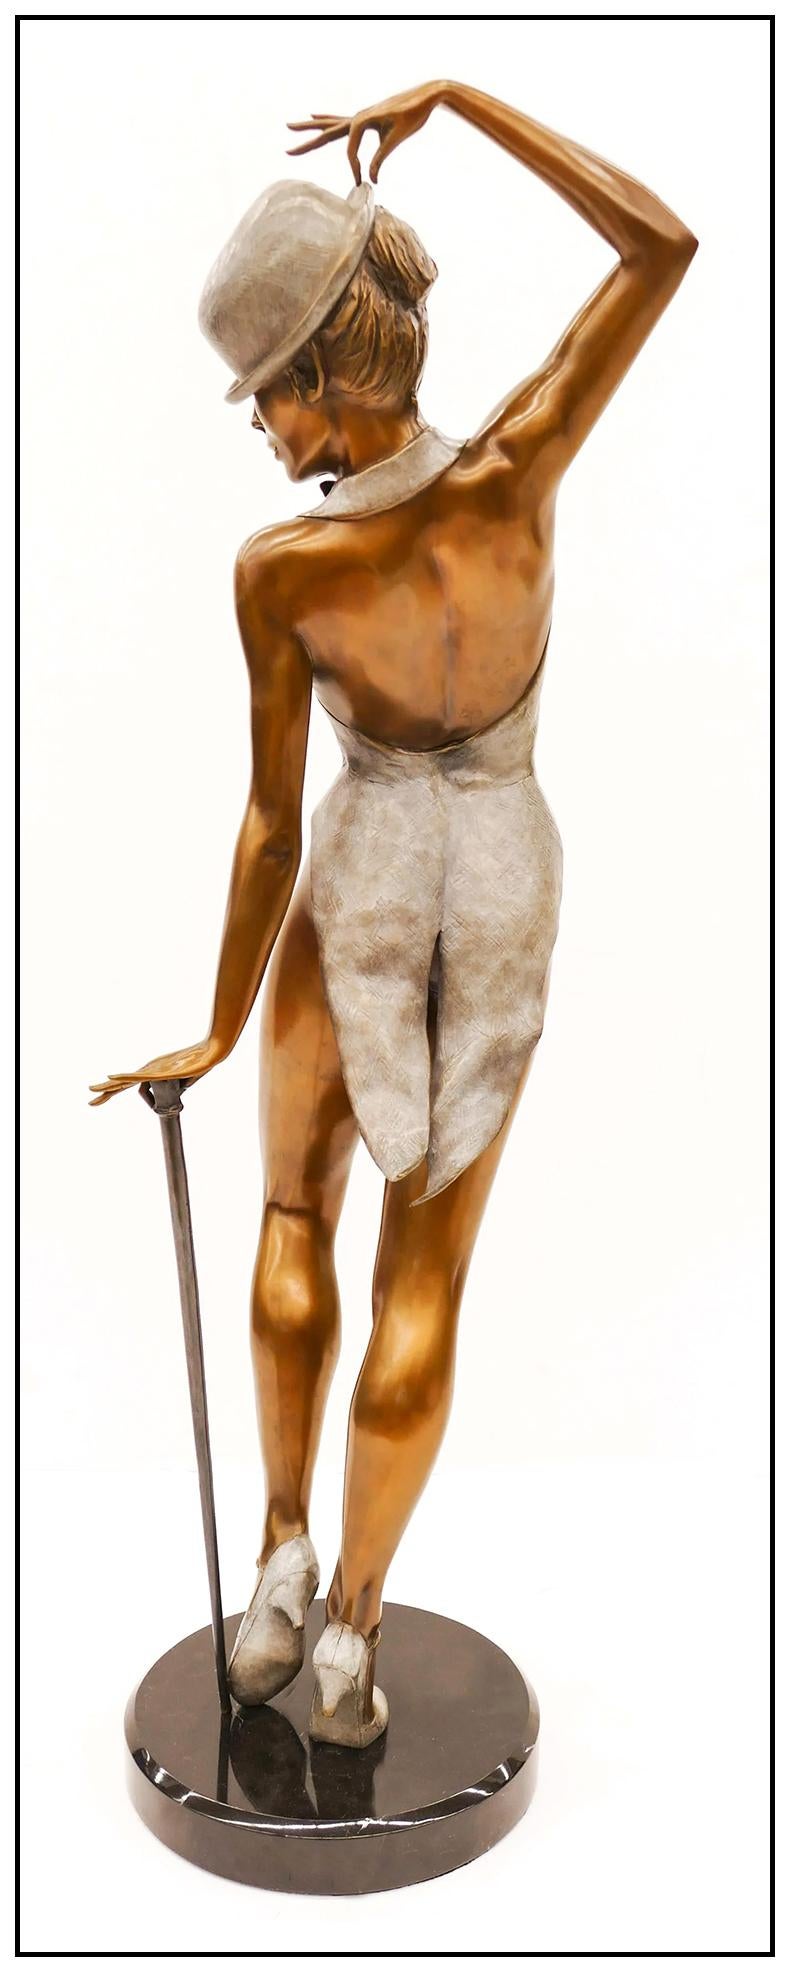 Mario Jason Authentic and Large Original Bronze Sculpture 